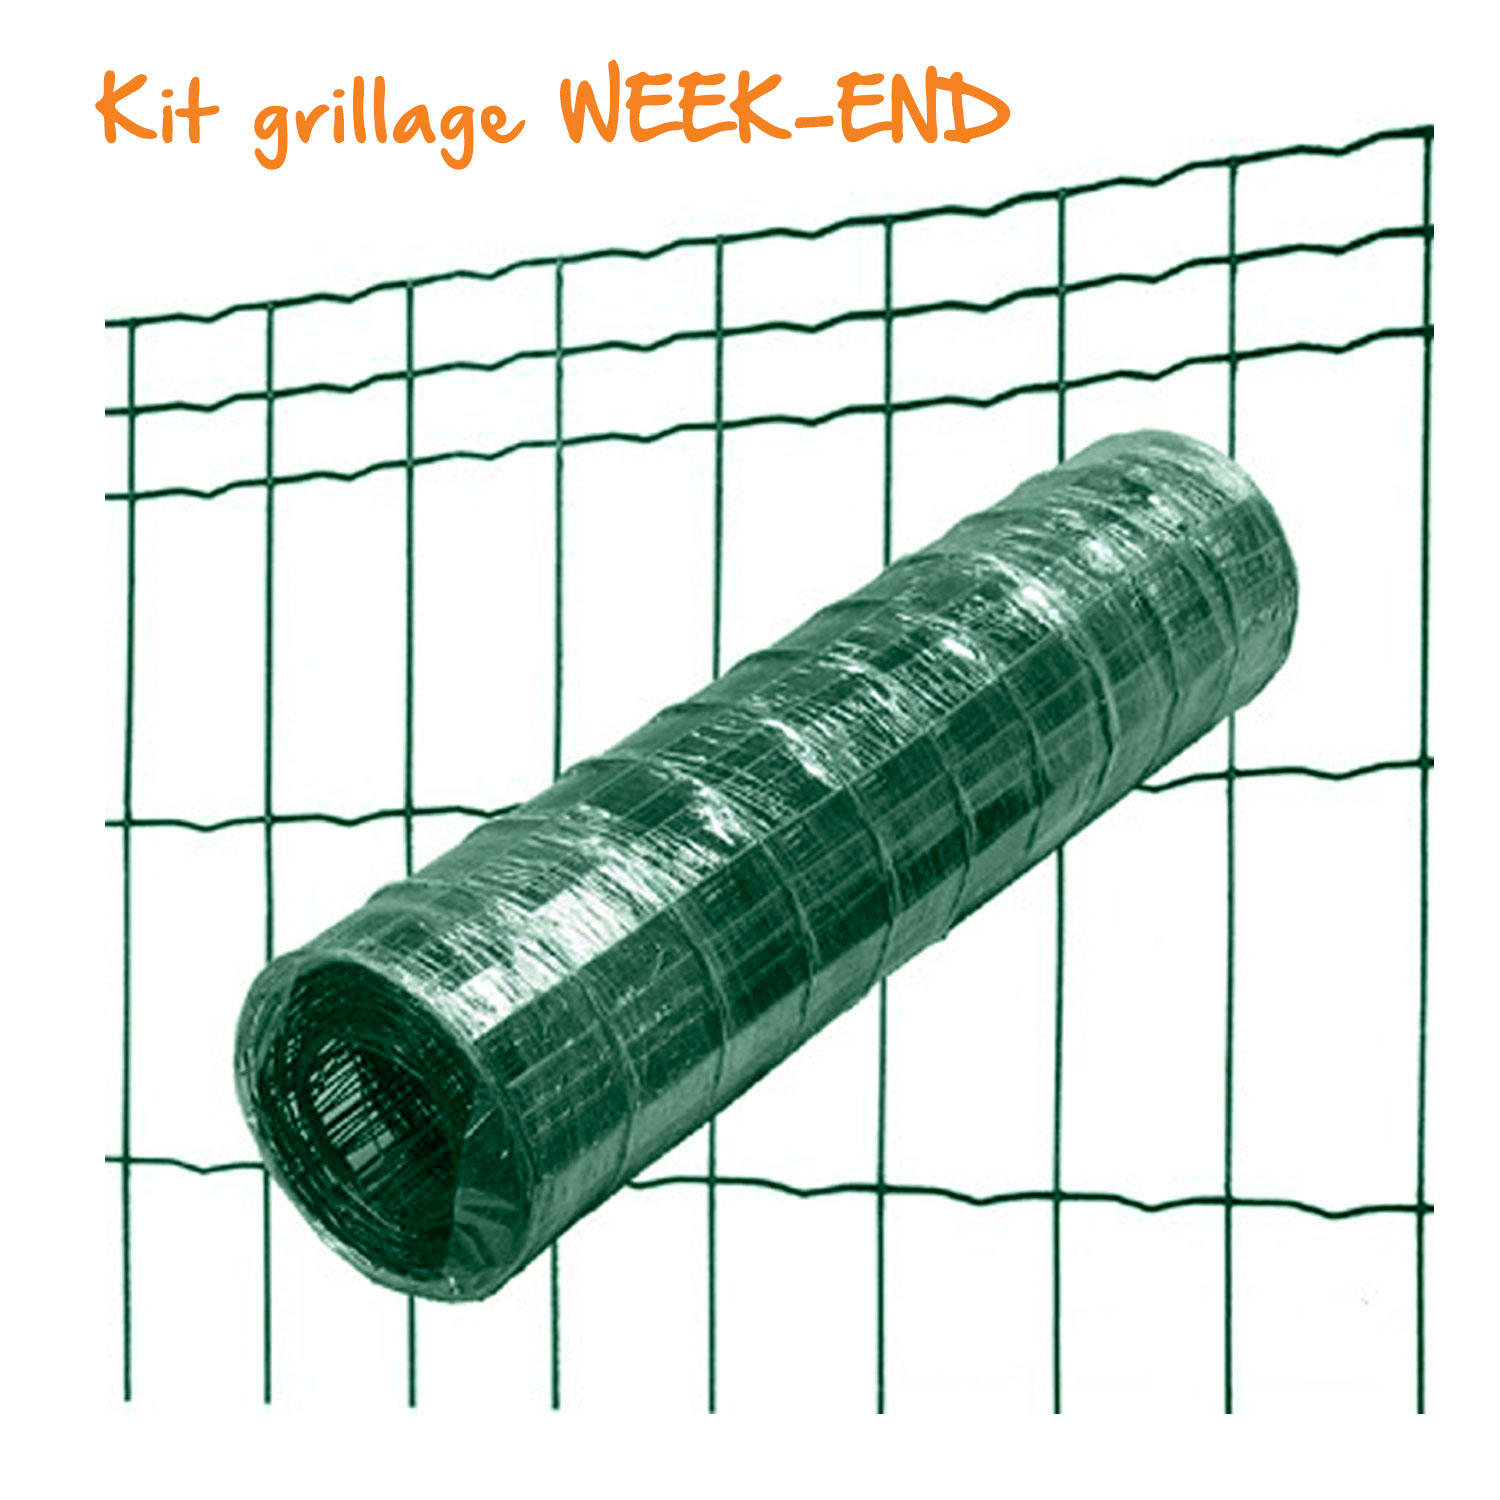 Kit grillage soudé WEEK-END 100x50 mm - Ø2,5 mm - 25m